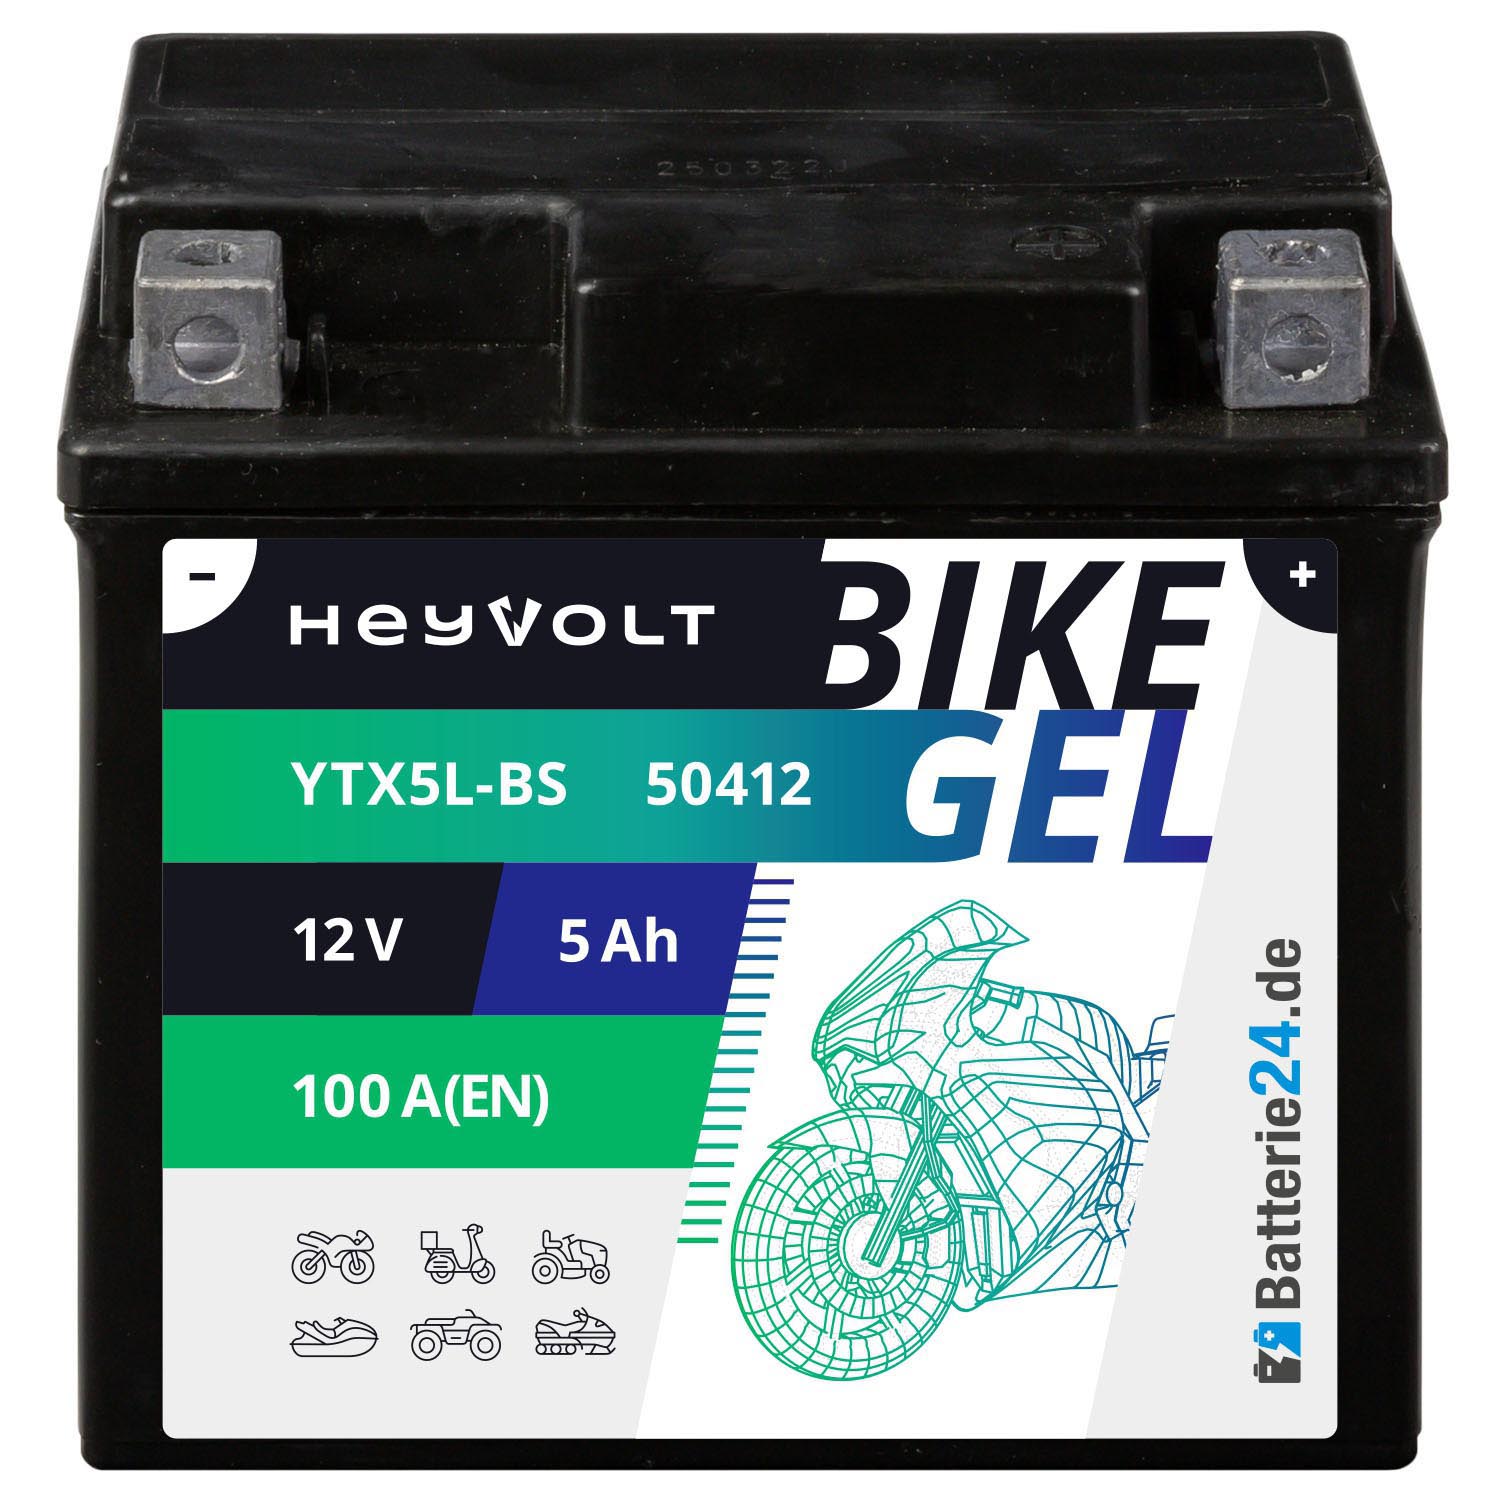 HeyVolt BIKE GEL Motorradbatterie YTX5L-BS 50412 12V 5Ah